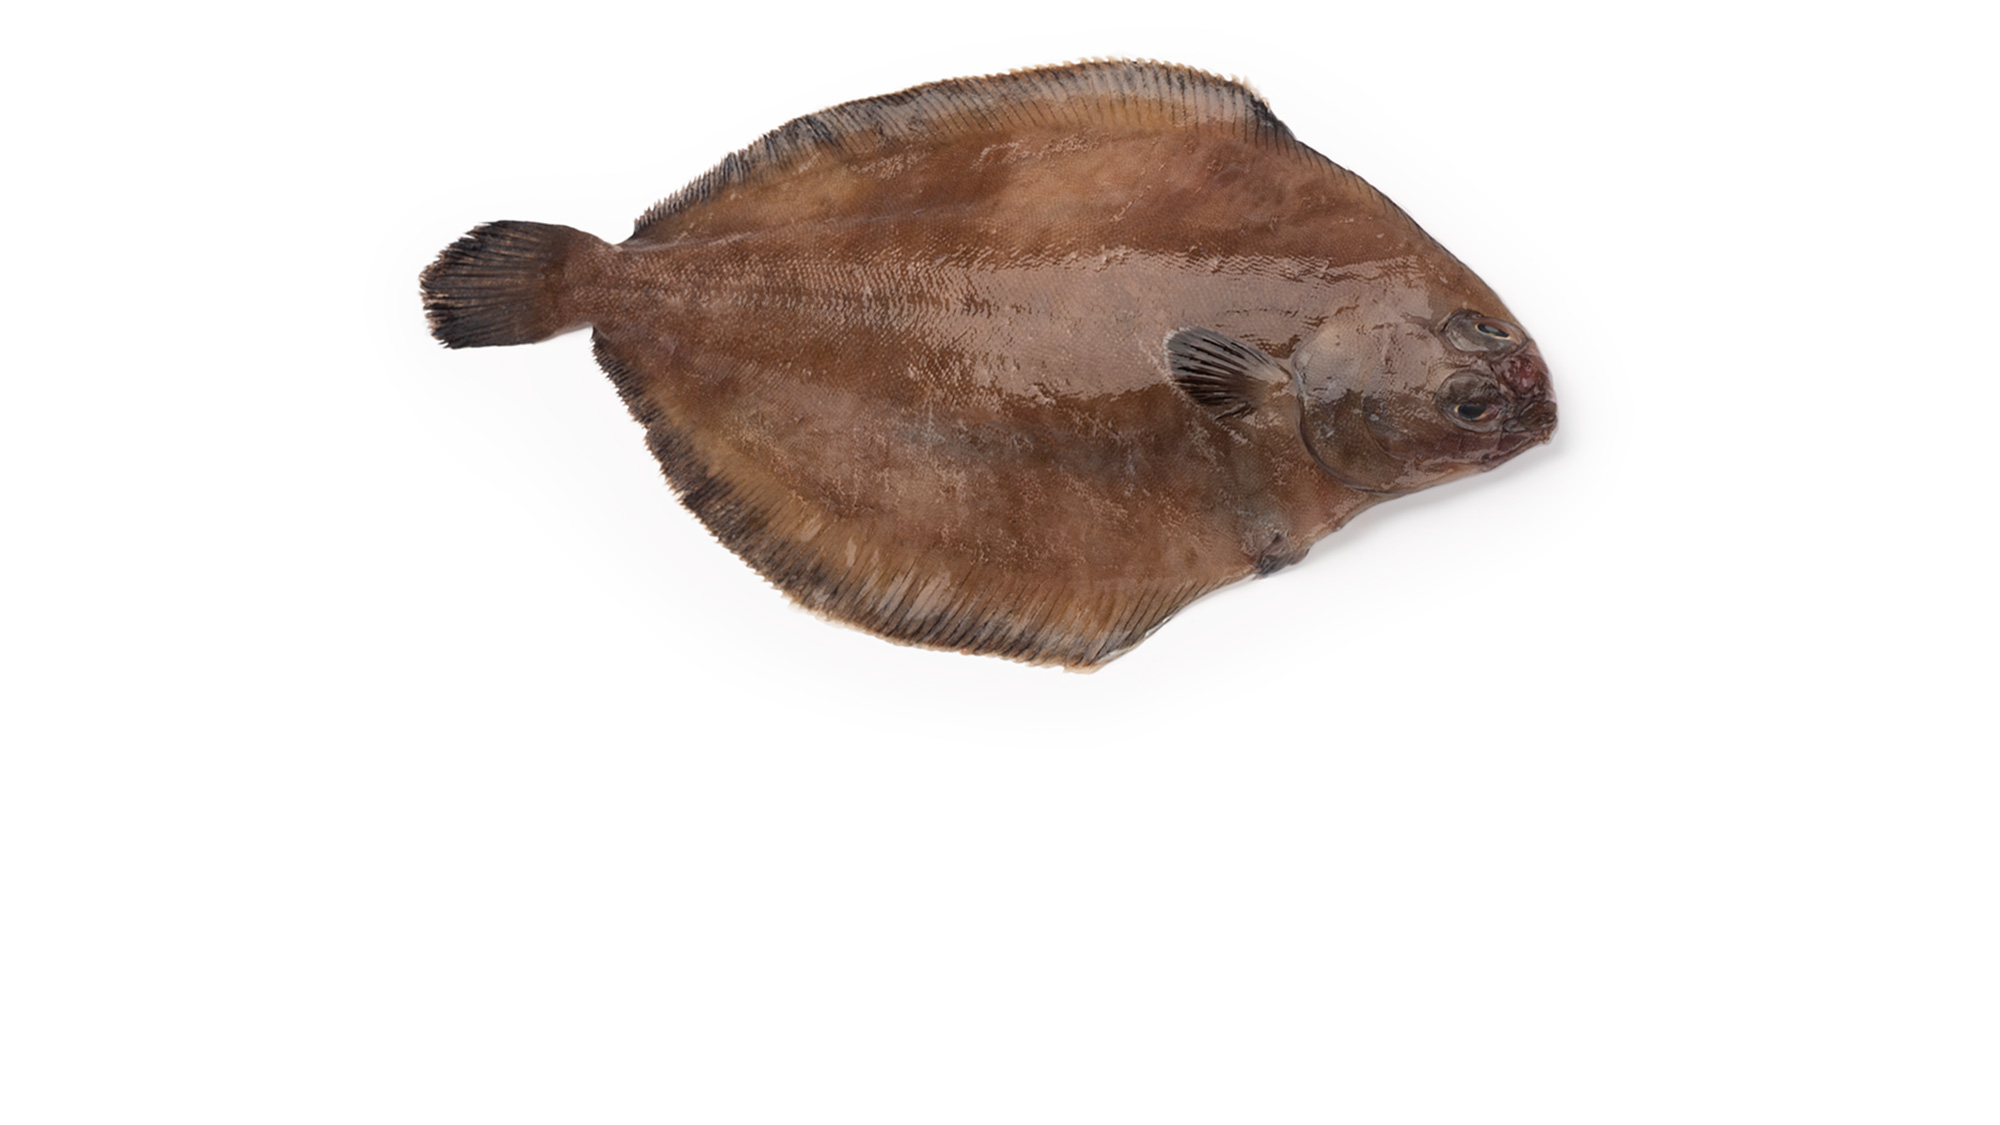 Flounder/Sole, Pseudopleuronectes americanus